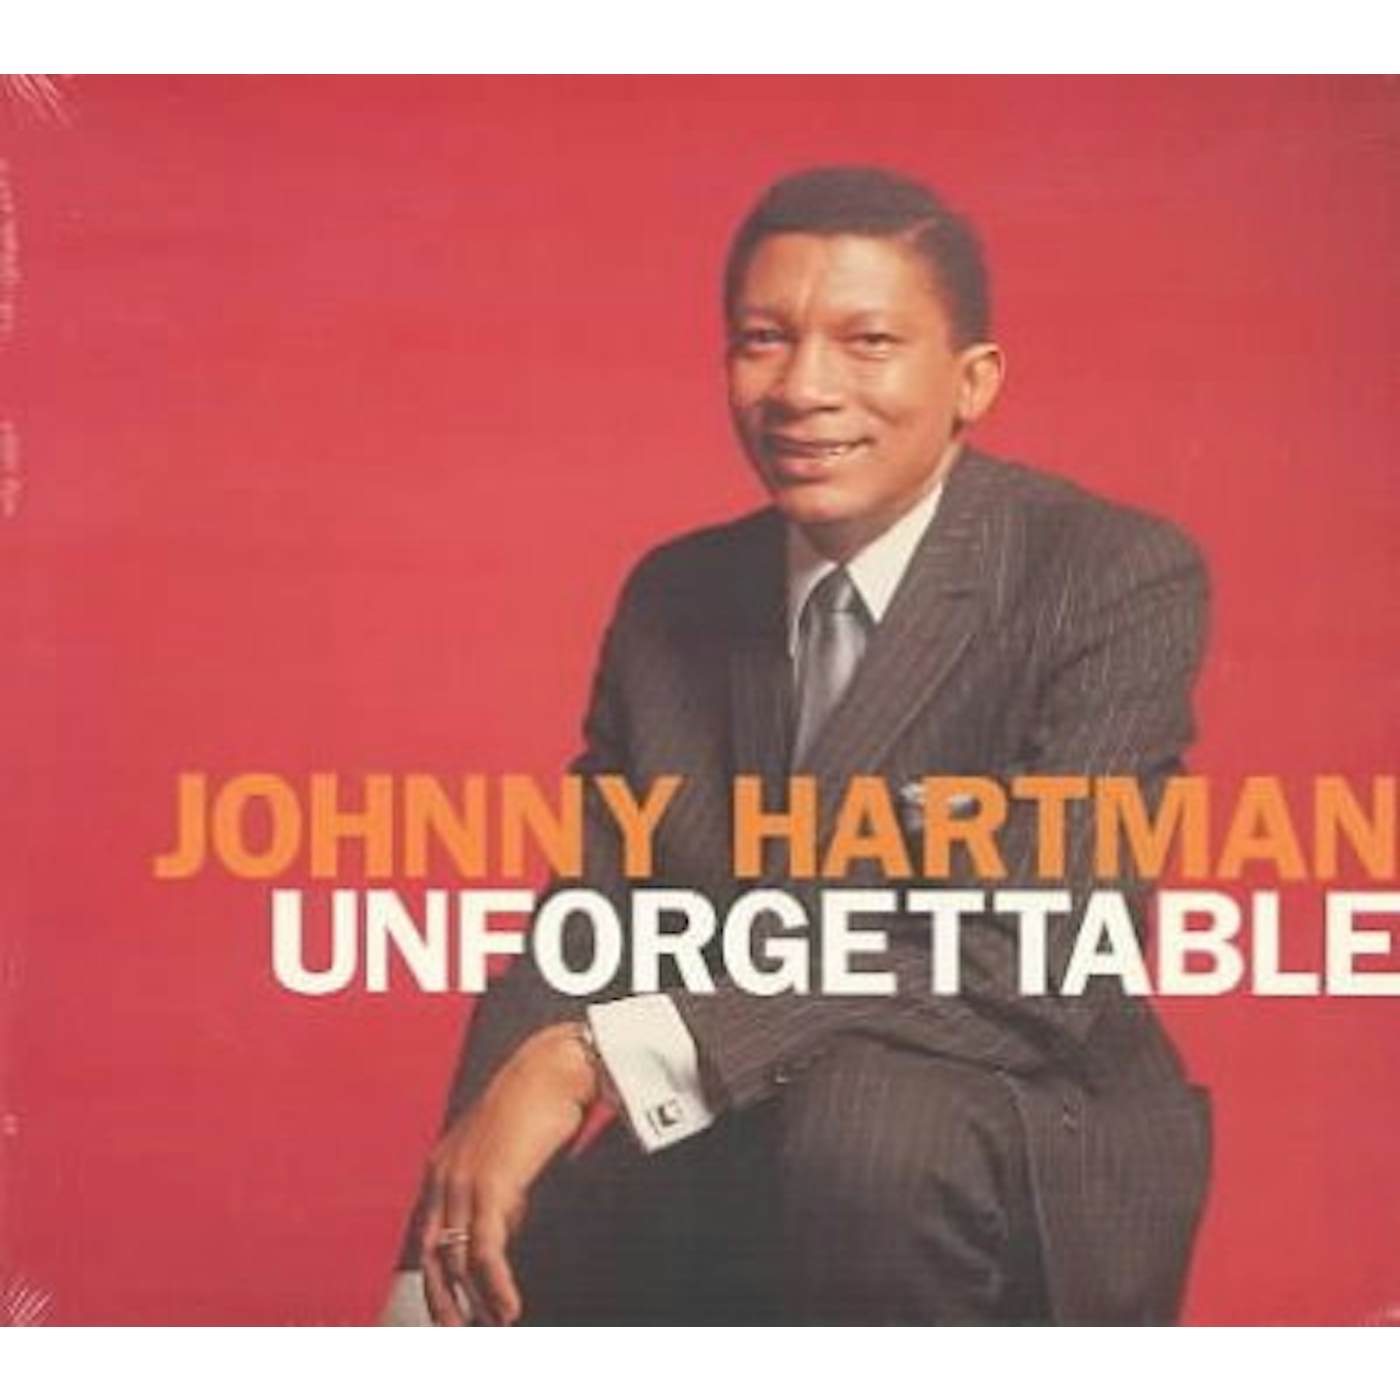 Johnny Hartman Unforgettable CD